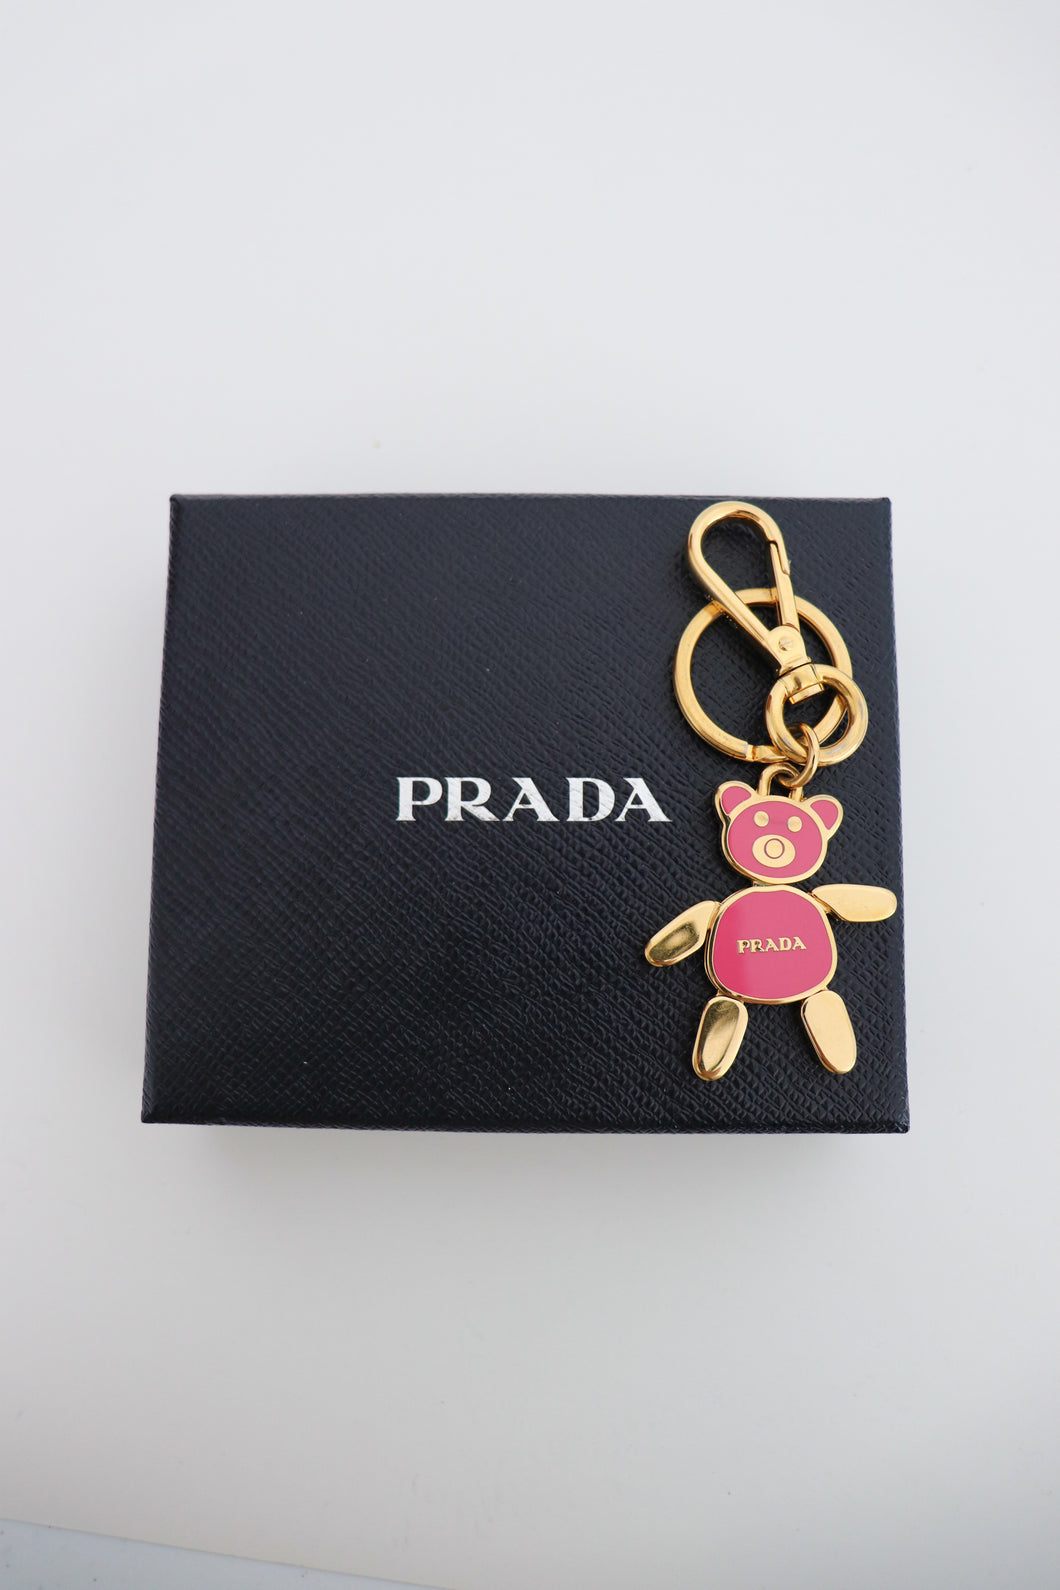 Prada bear key chain